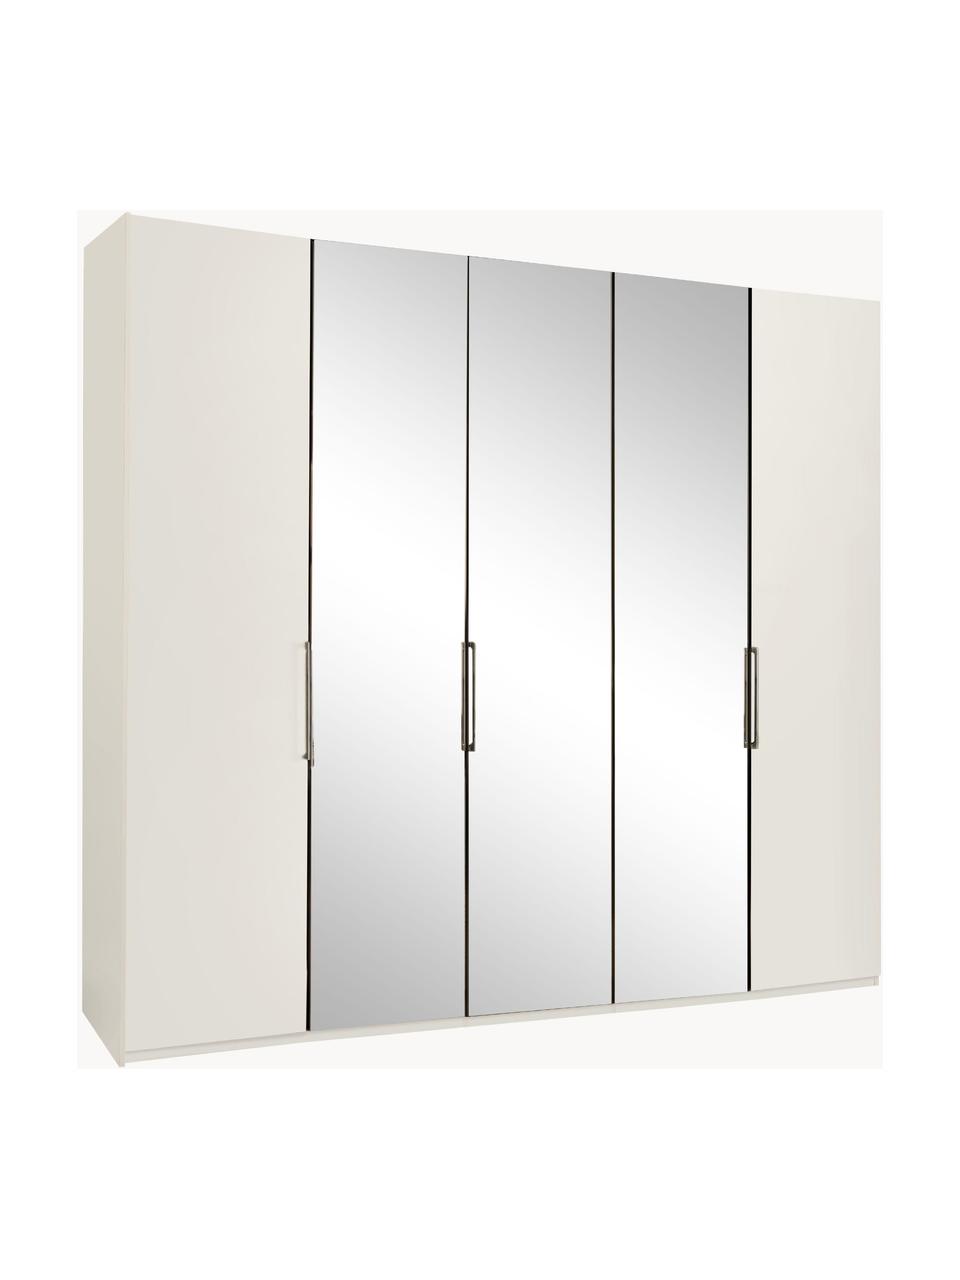 Šatníková skriňa so zrkadlovými dverami Monaco, 5-dverová, Biela, so zrkadlovými dverami, Š 247 x V 216 cm